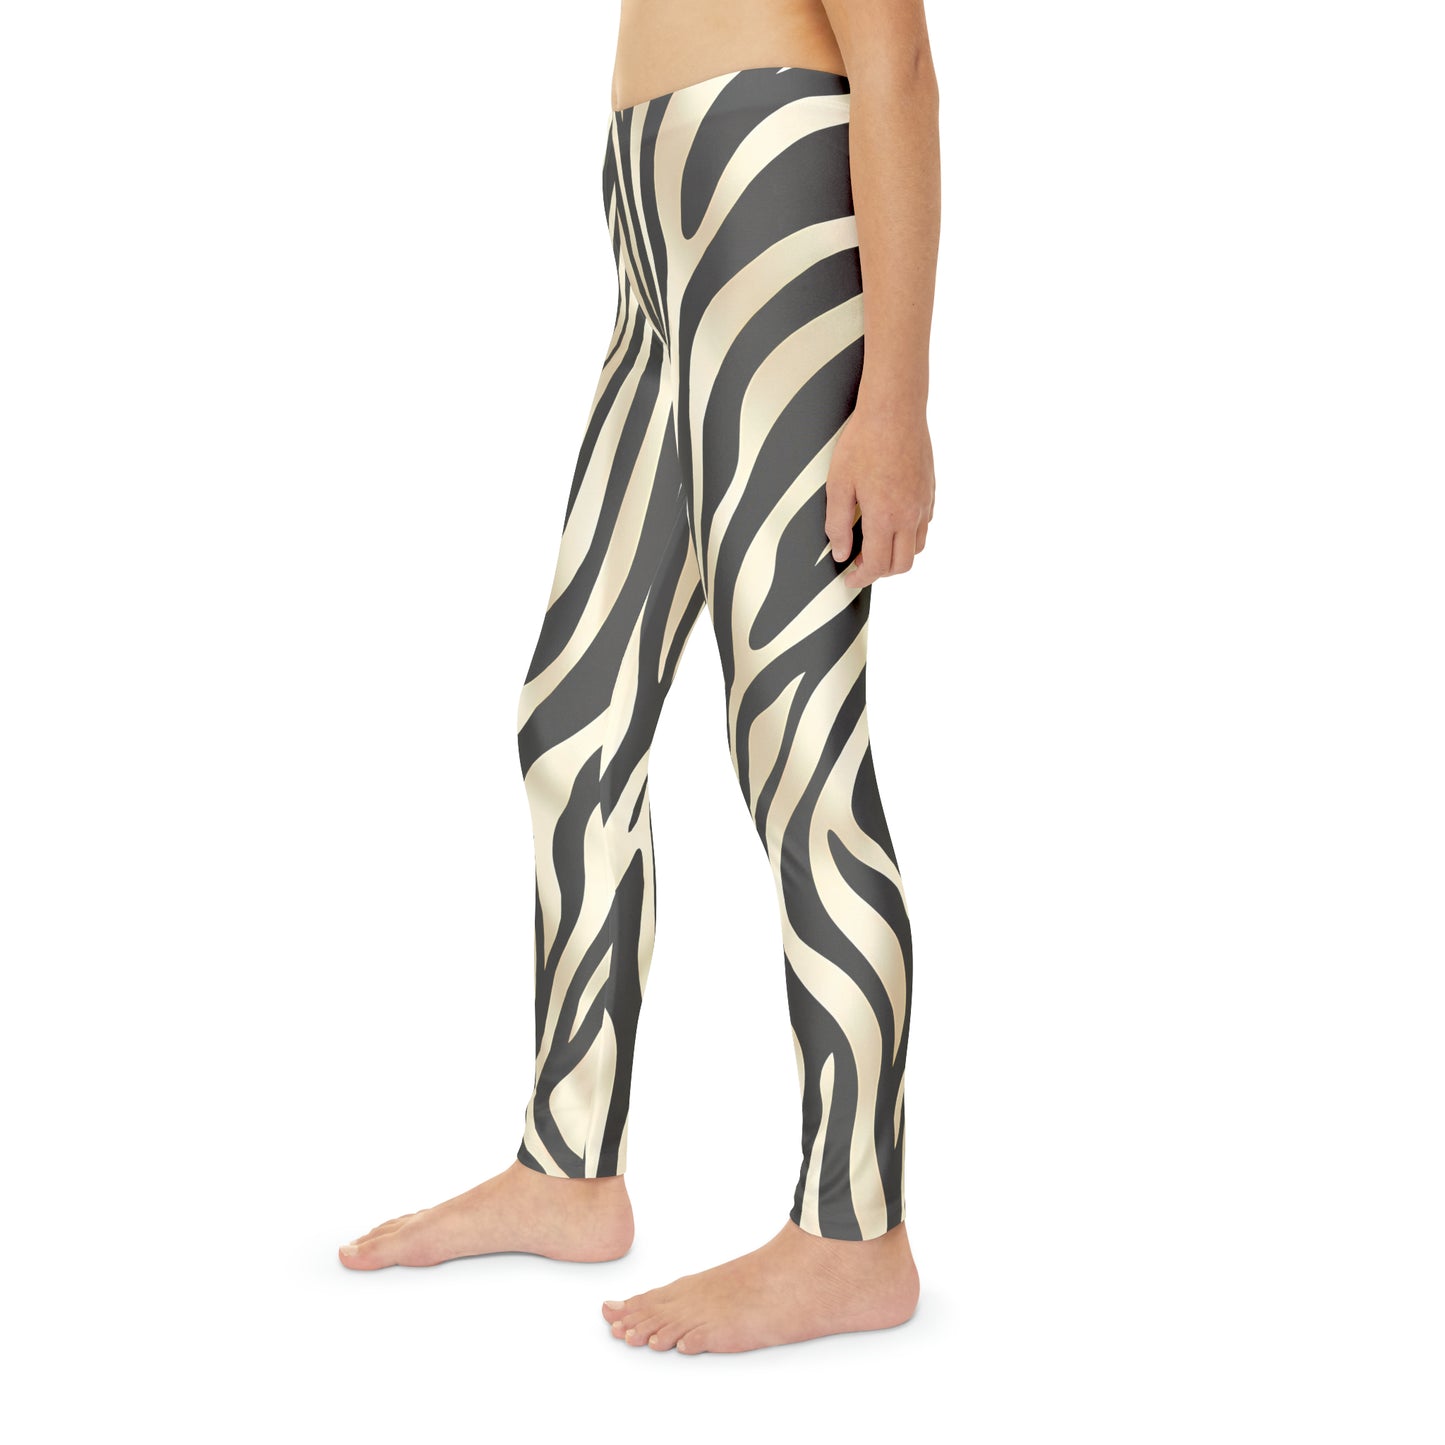 Zebra Print Girls Leggings